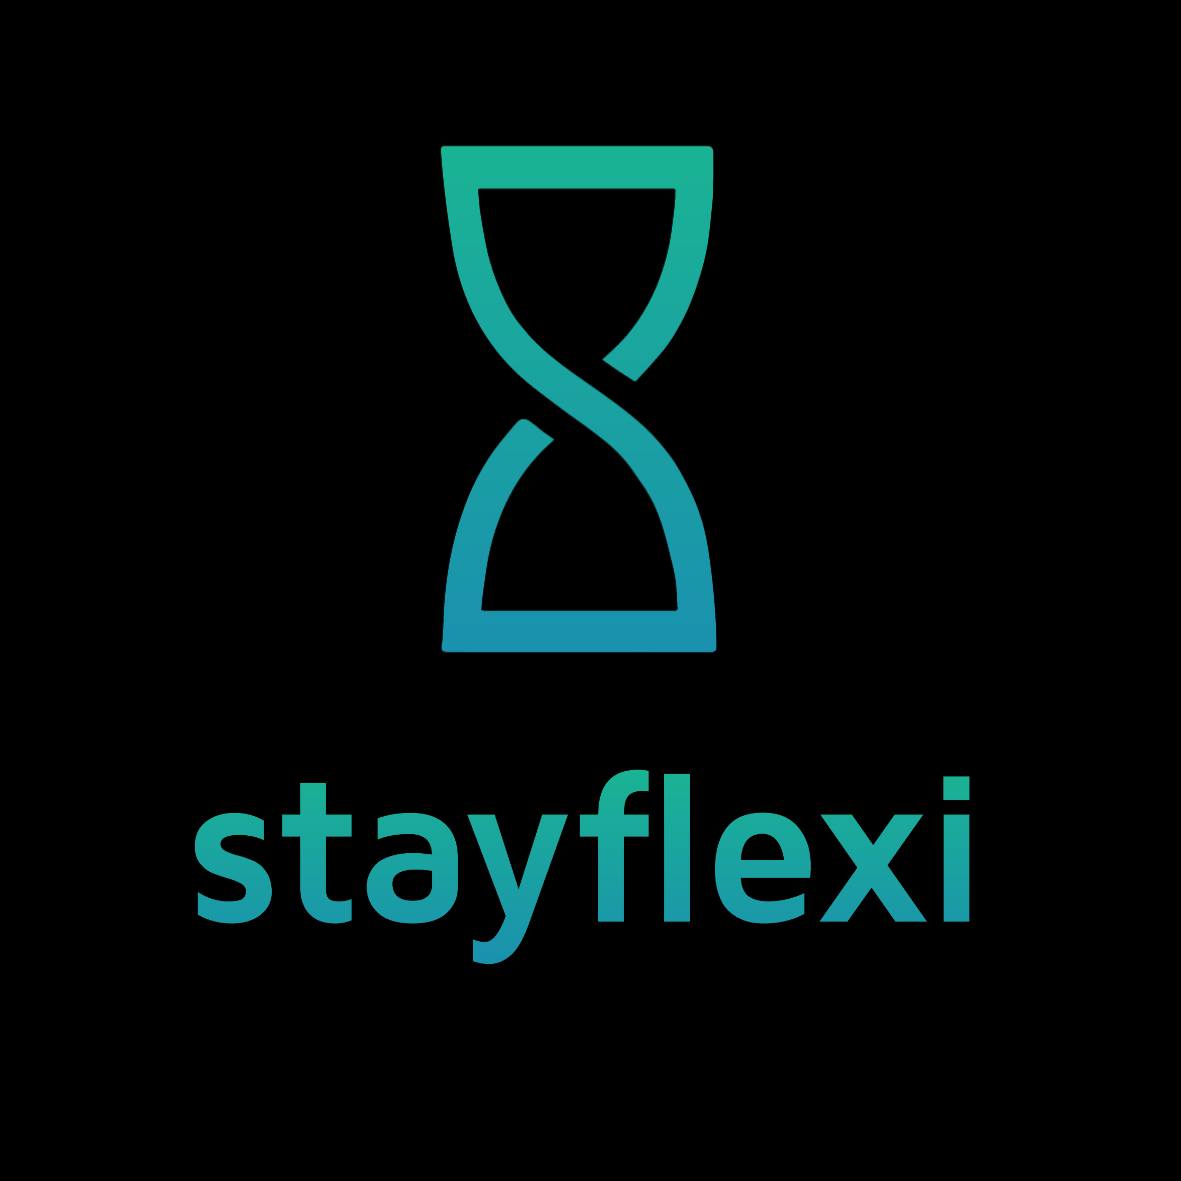 Stayflexi